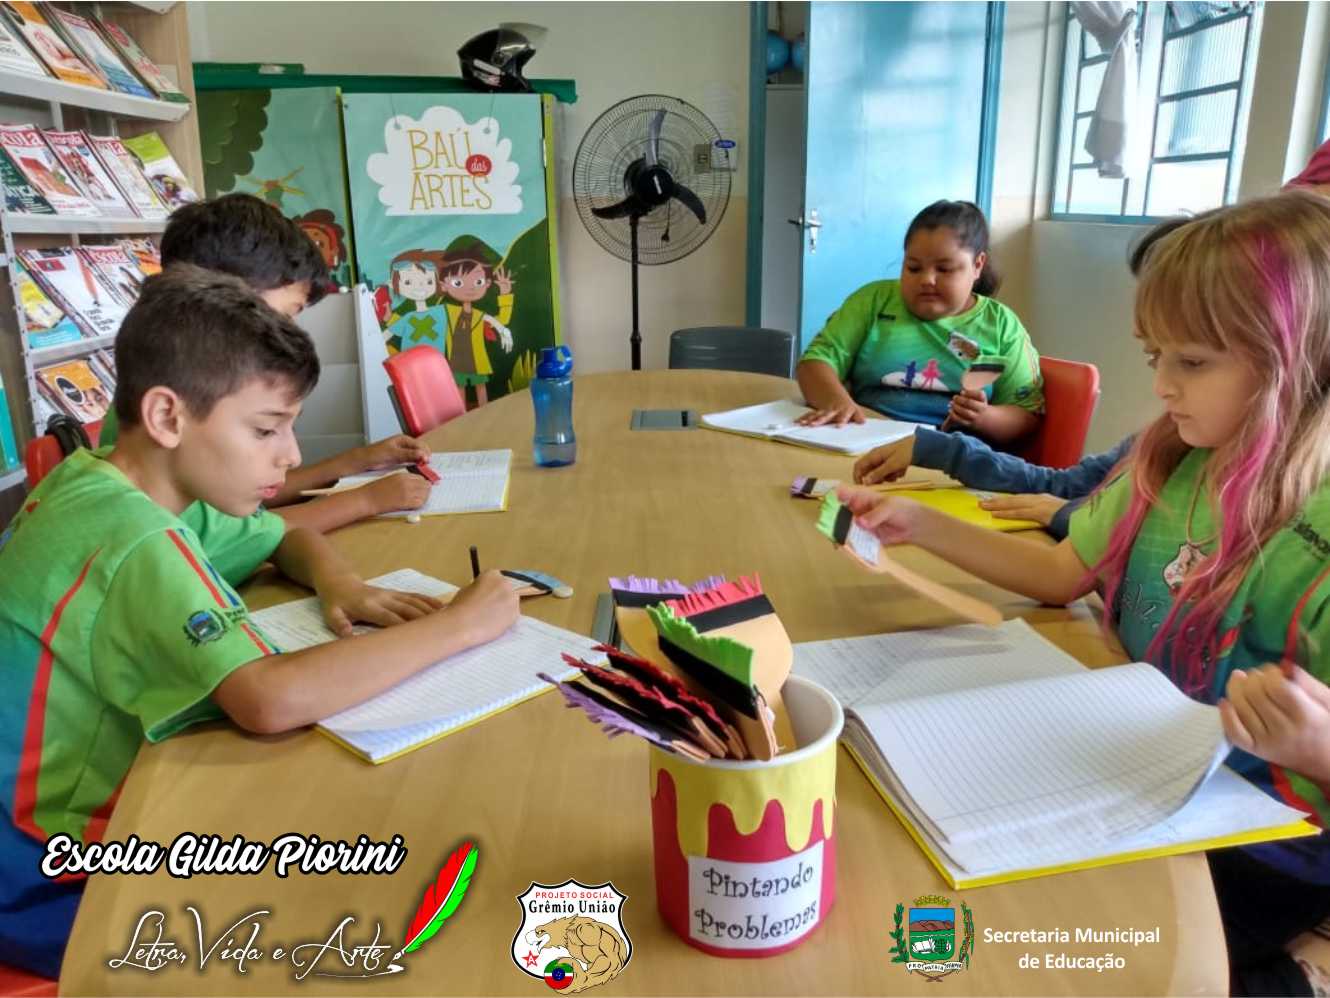 Oficina de Jogos Português e Matemática – Escola Gilda Piorini – Projeto  Social Grêmio União